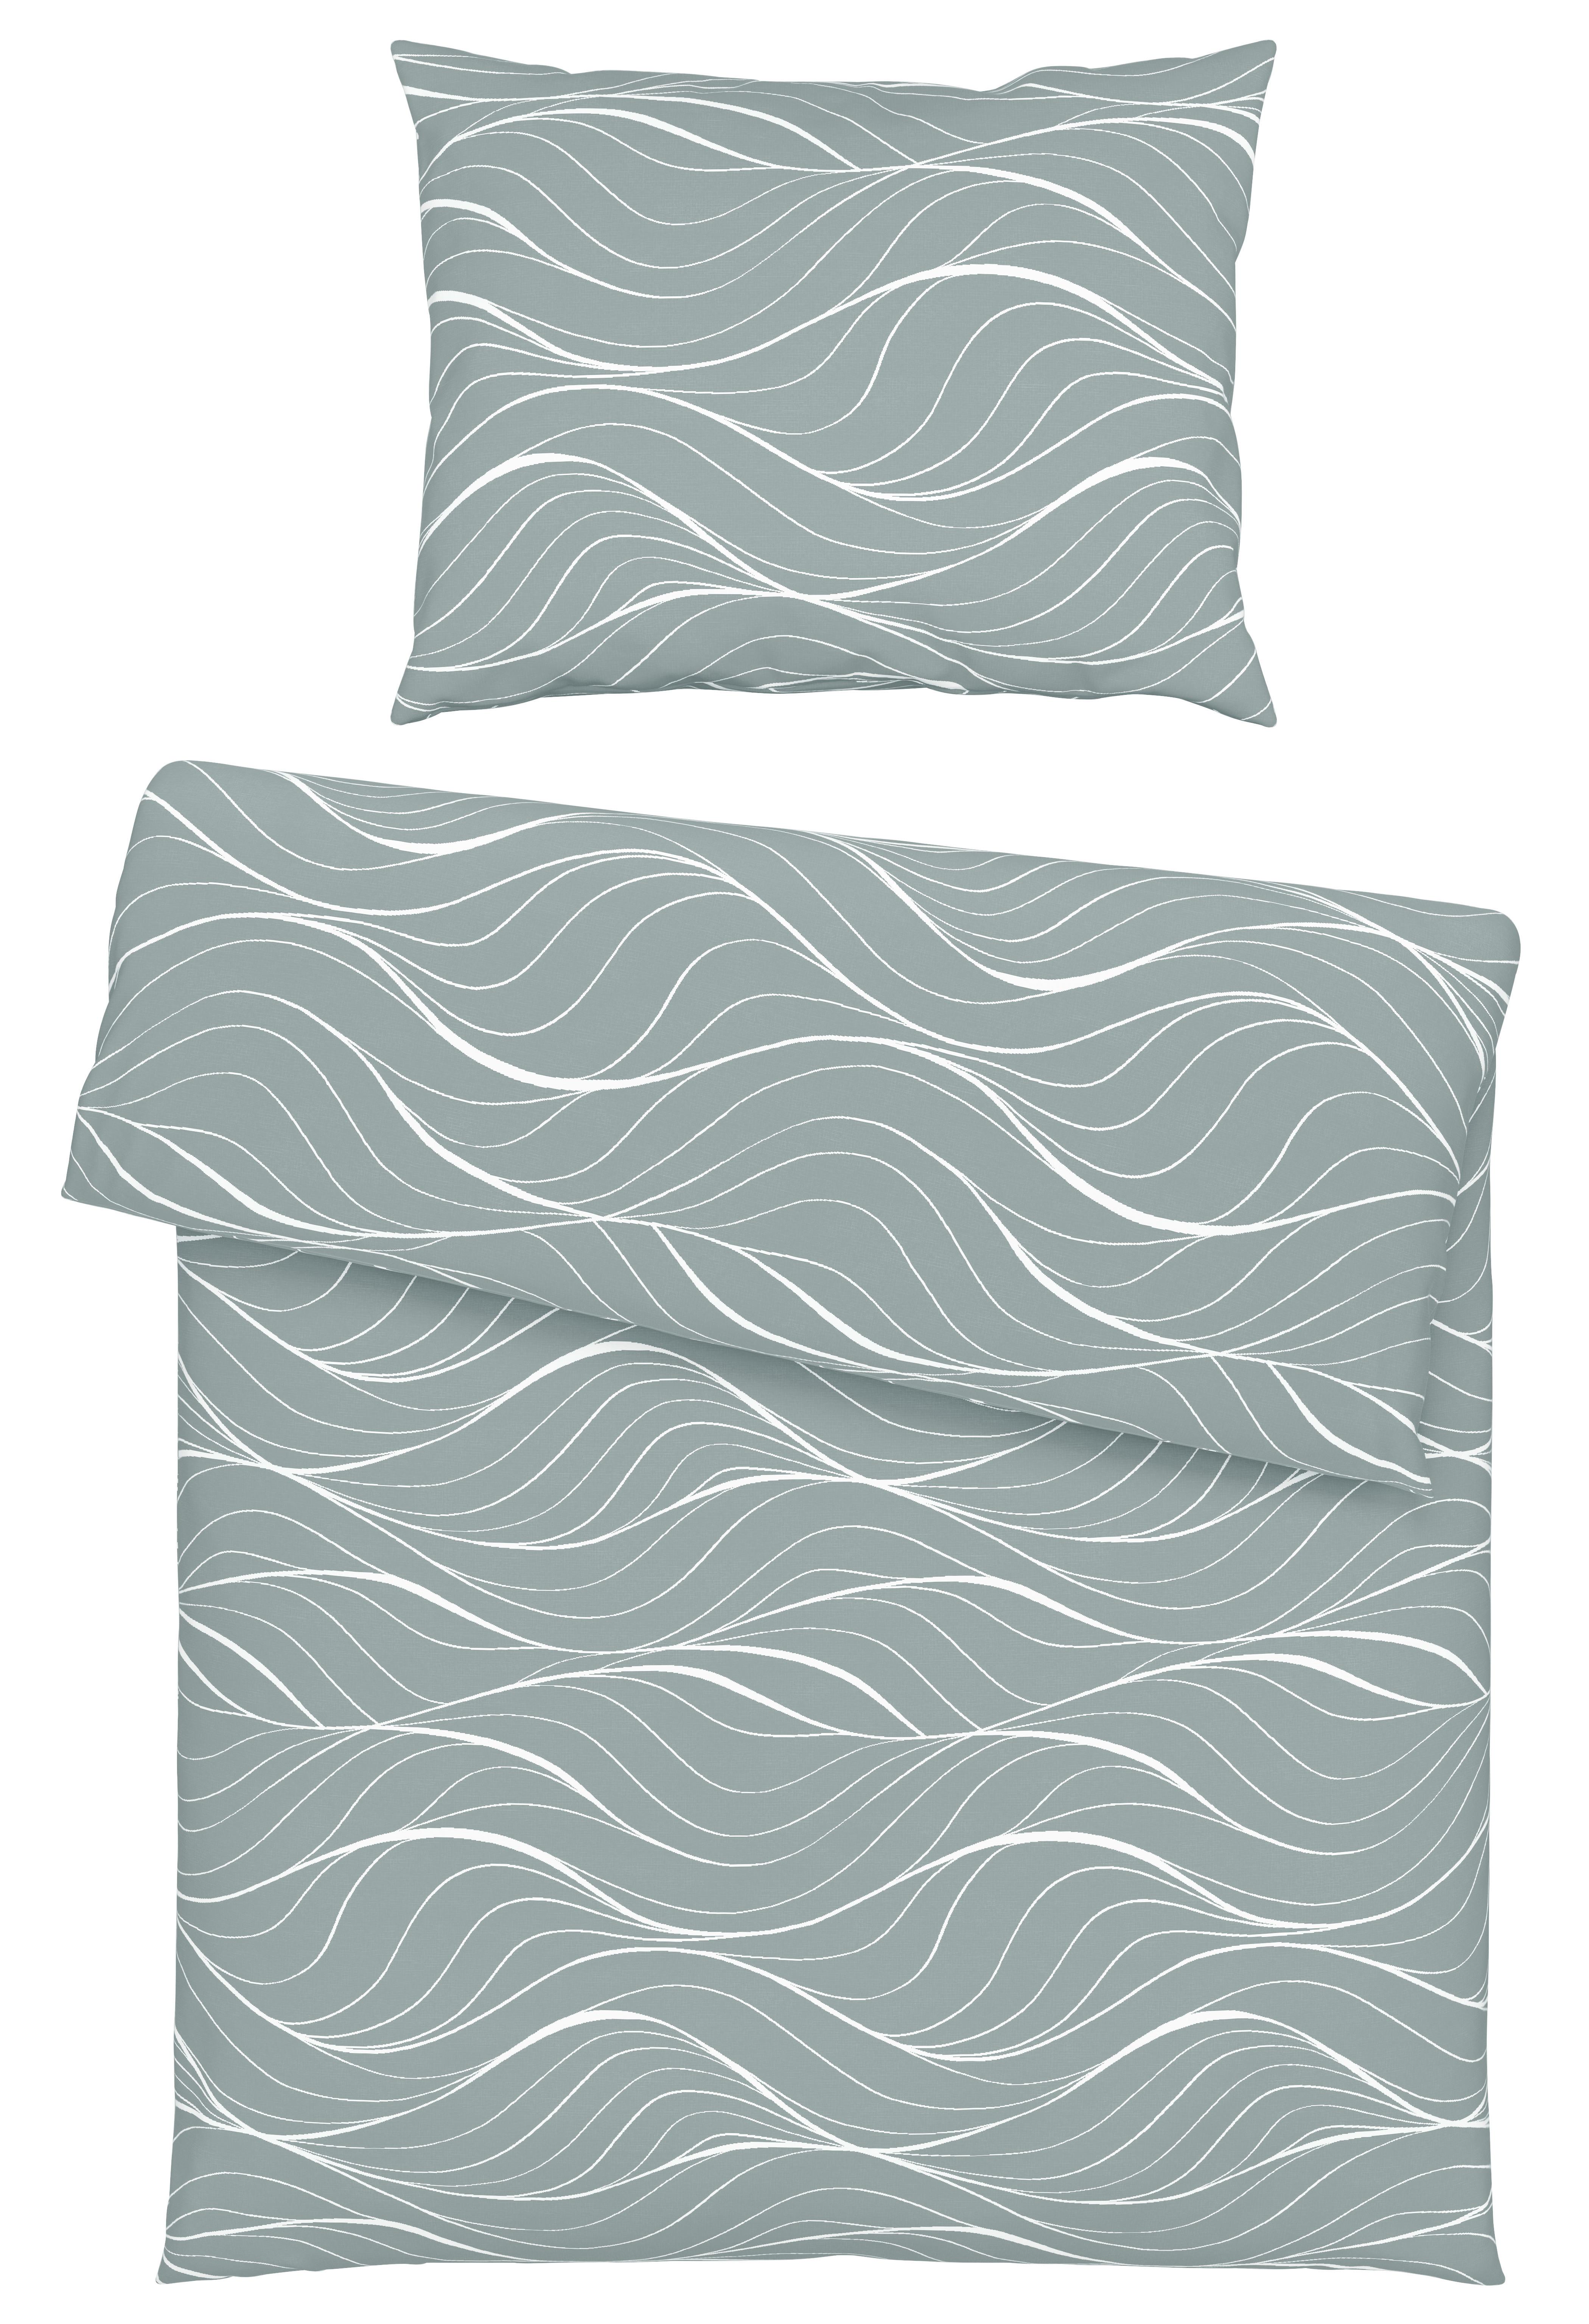 Povlečení Waves, 70/90 140/200cm - světle šedá, textil (140/200cm) - Modern Living